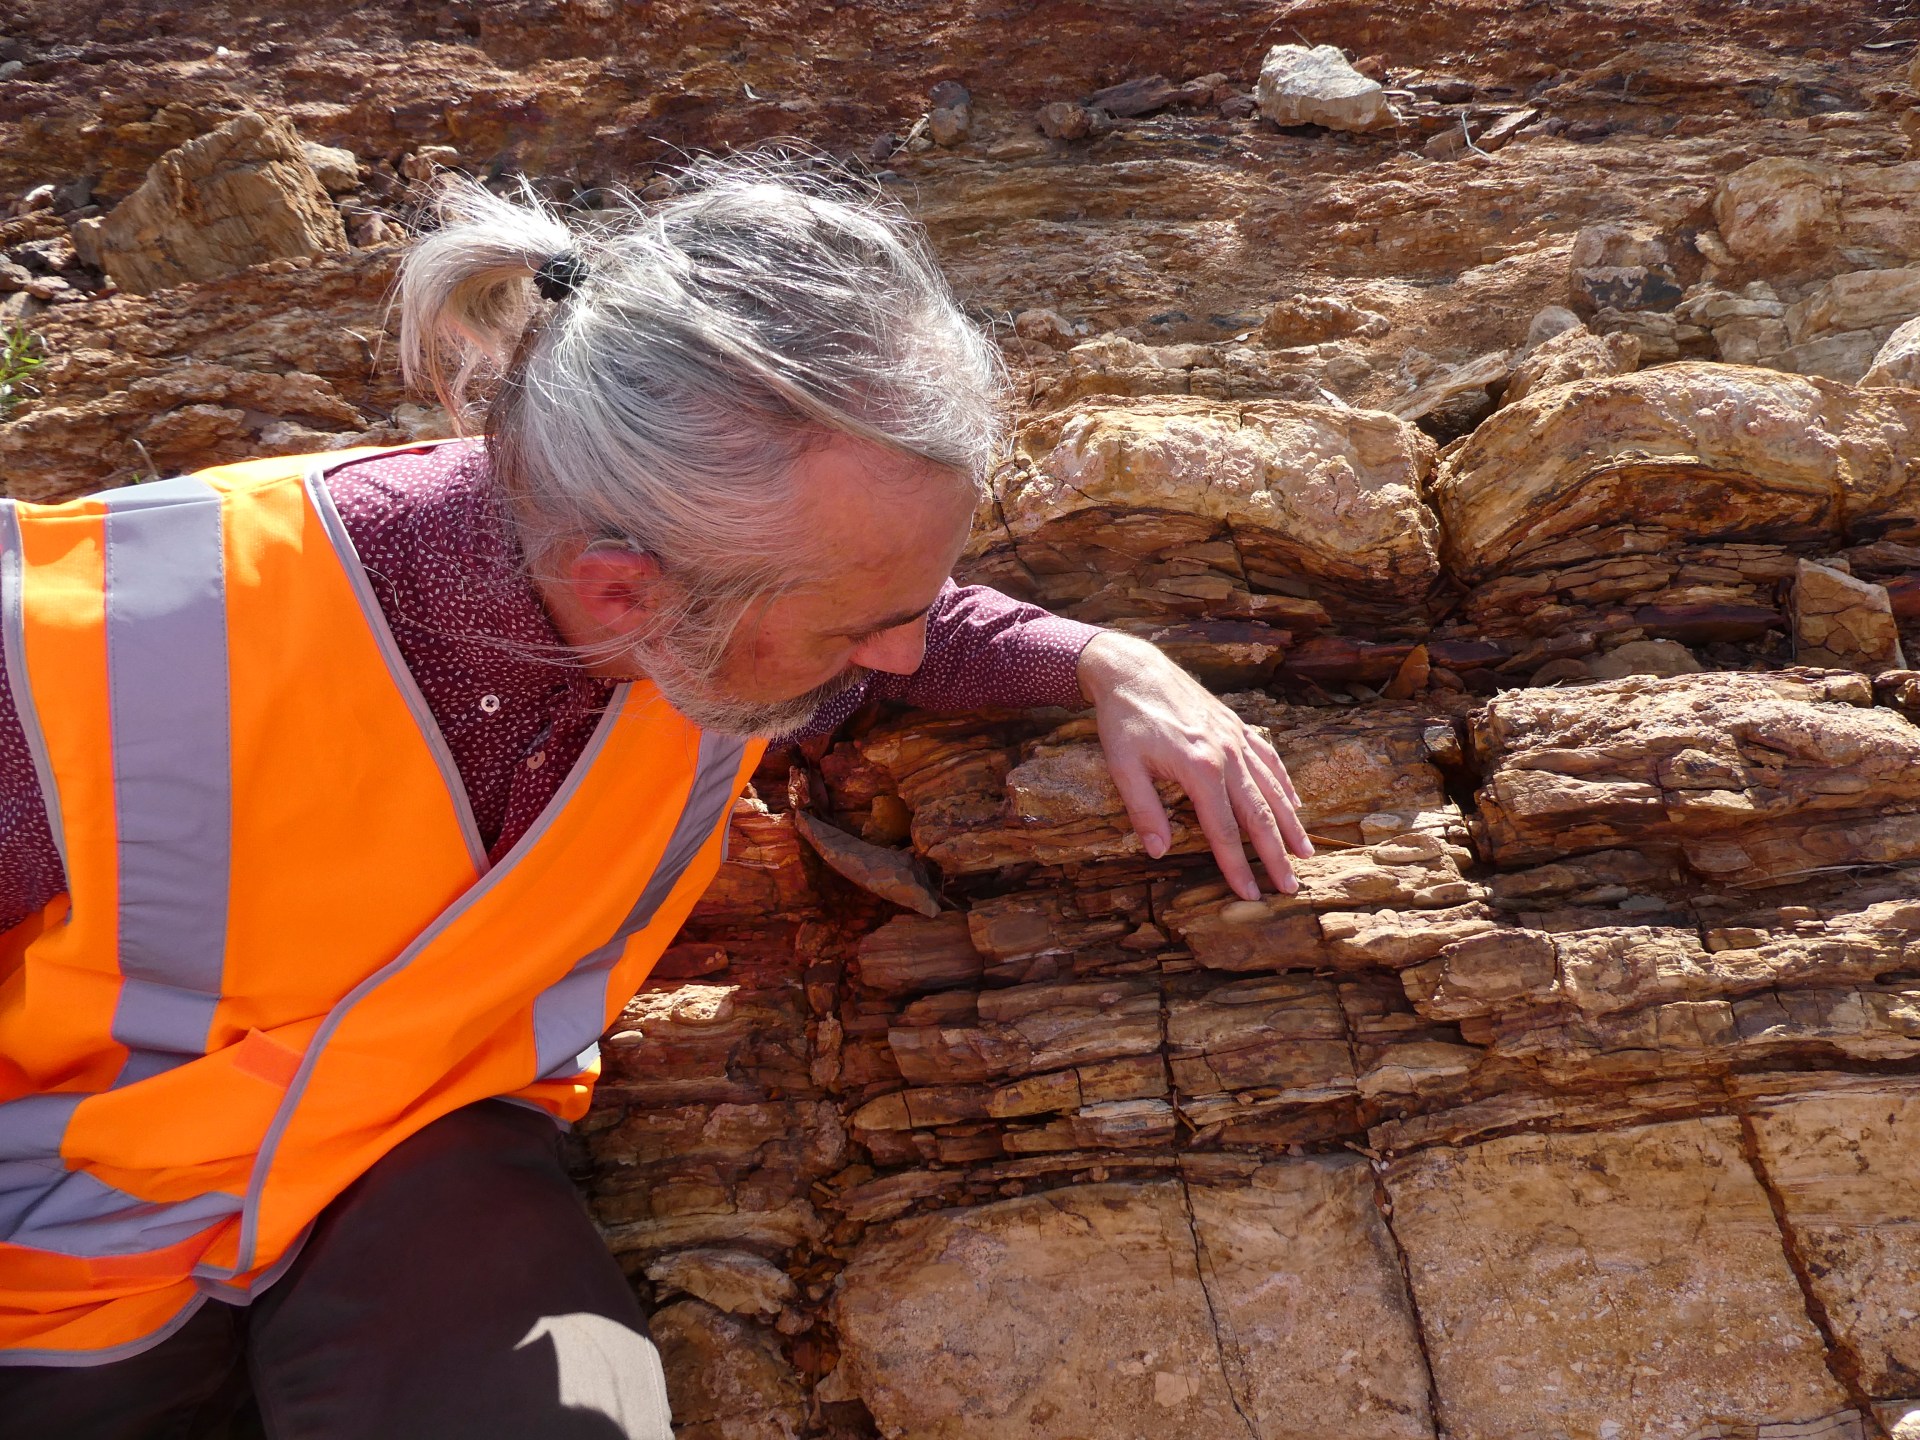 Wissenschaftler entdecken die „verlorene Welt“ in einem Milliarden Jahre alten australischen Gestein |  Nachrichten aus Wissenschaft und Technik